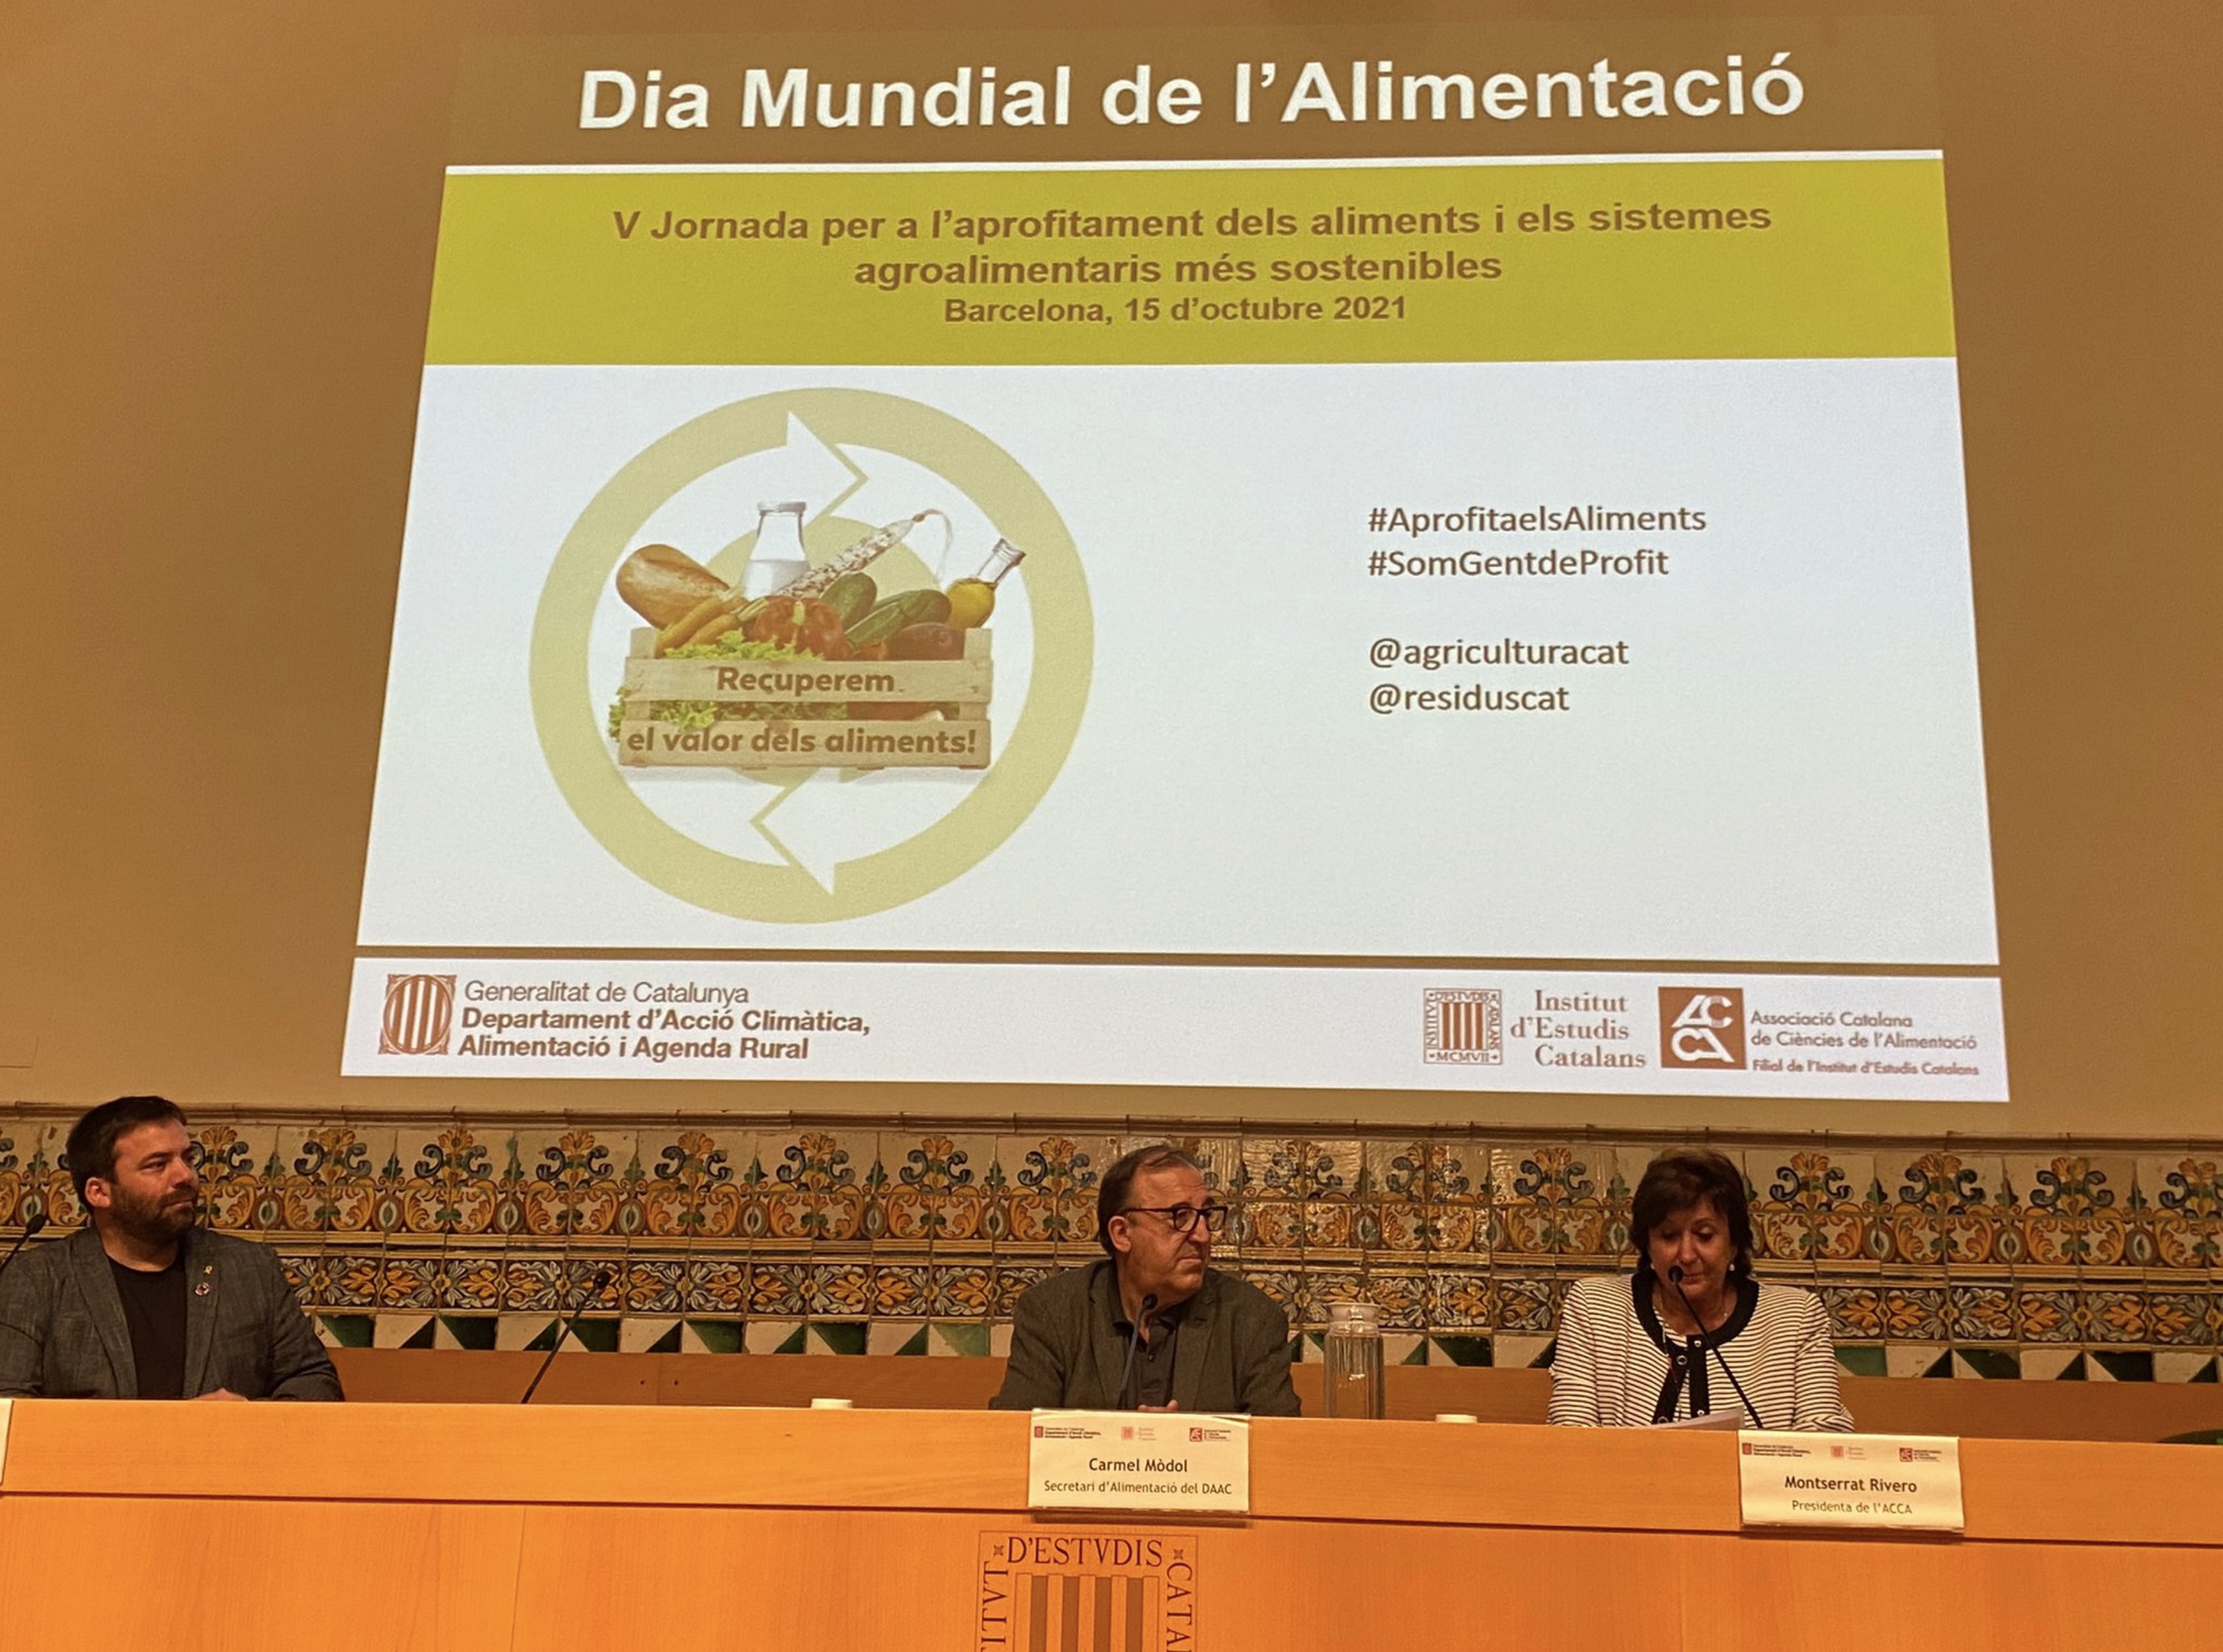 ACCA co-organitzadora de la V Jornada per l’Aprofitament dels Aliments i els Sistemes Alimentaris més Sostenibles, 15 d’octubre (Barcelona)